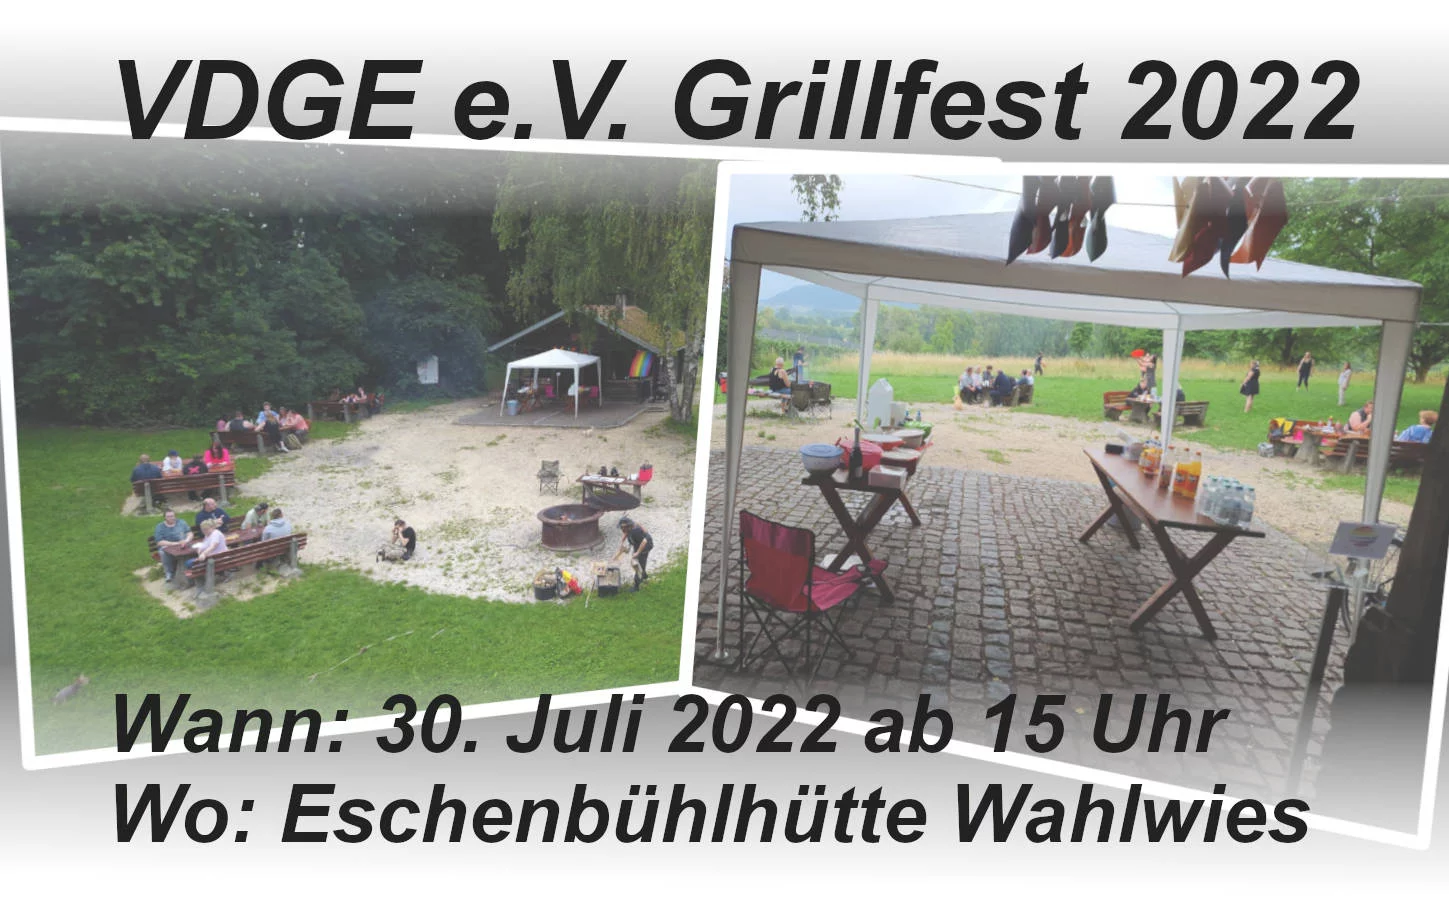 titleimage grillfest 2022 jpg - VDGE e.V.